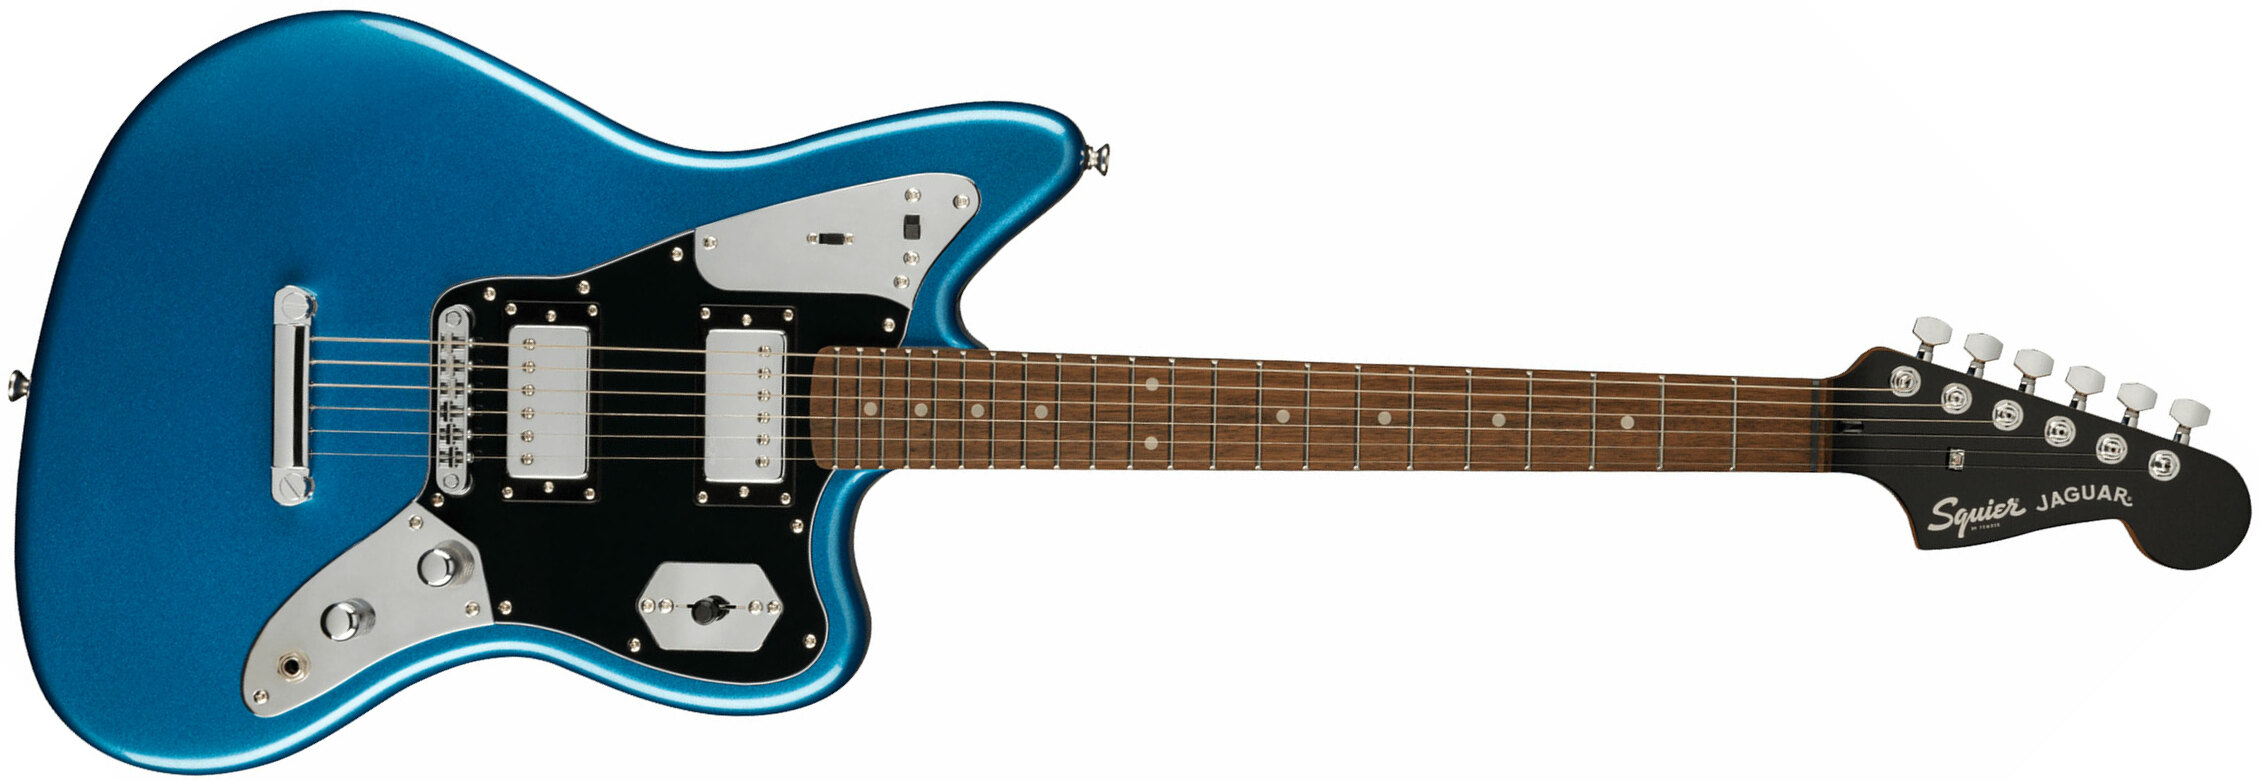 Squier Jaguar Contemporary Hh St Fsr Ltd Ht Lau - Lake Placid Blue - Guitarra electrica retro rock - Main picture